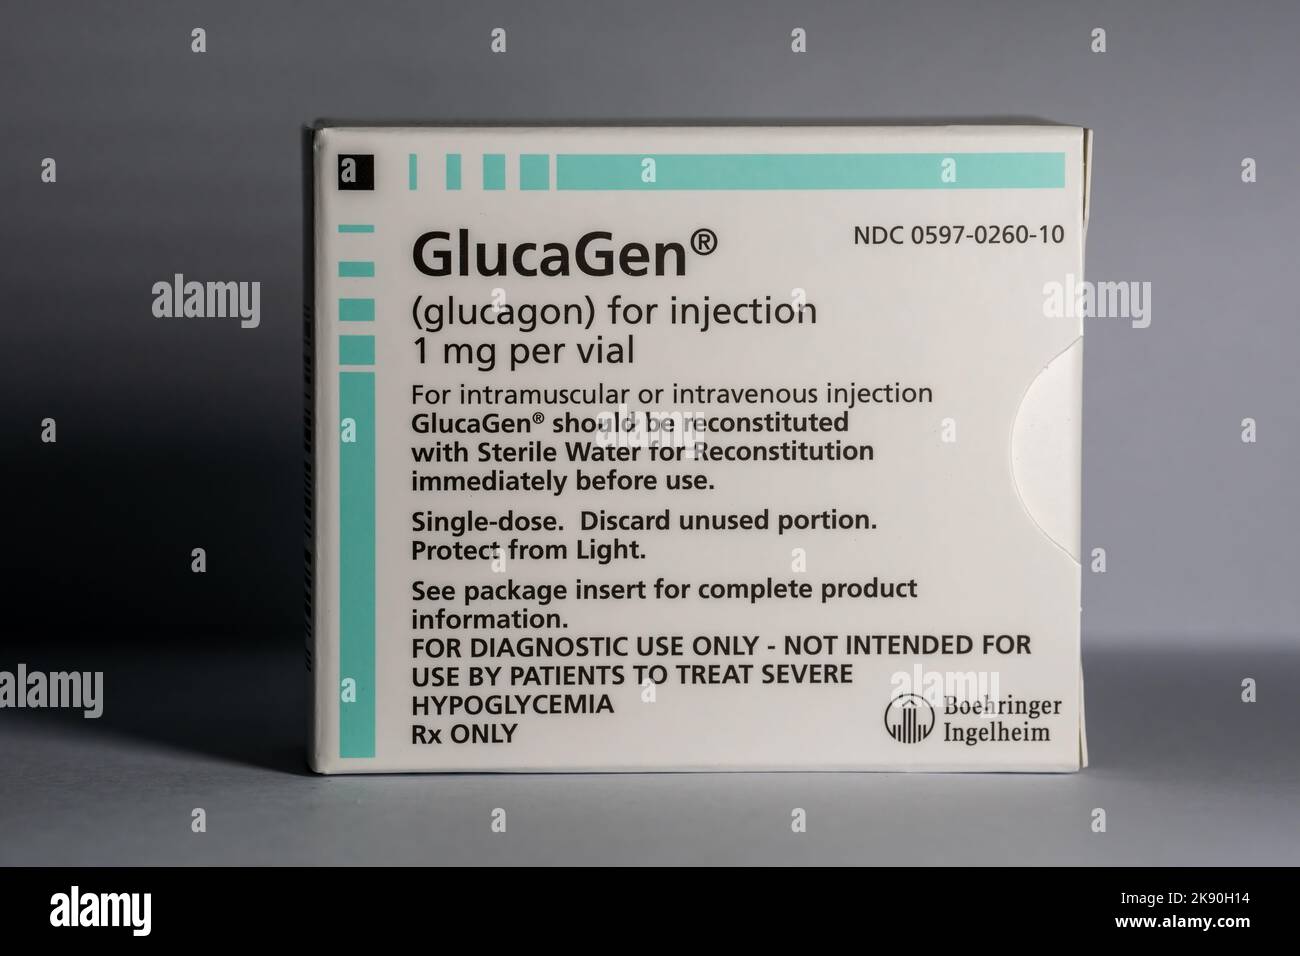 Ein Paket Glucagon-Medikament zur Injektion, das ein Notfallmedikament zur  Behandlung schwerer Hypoglykämie ist Stockfotografie - Alamy